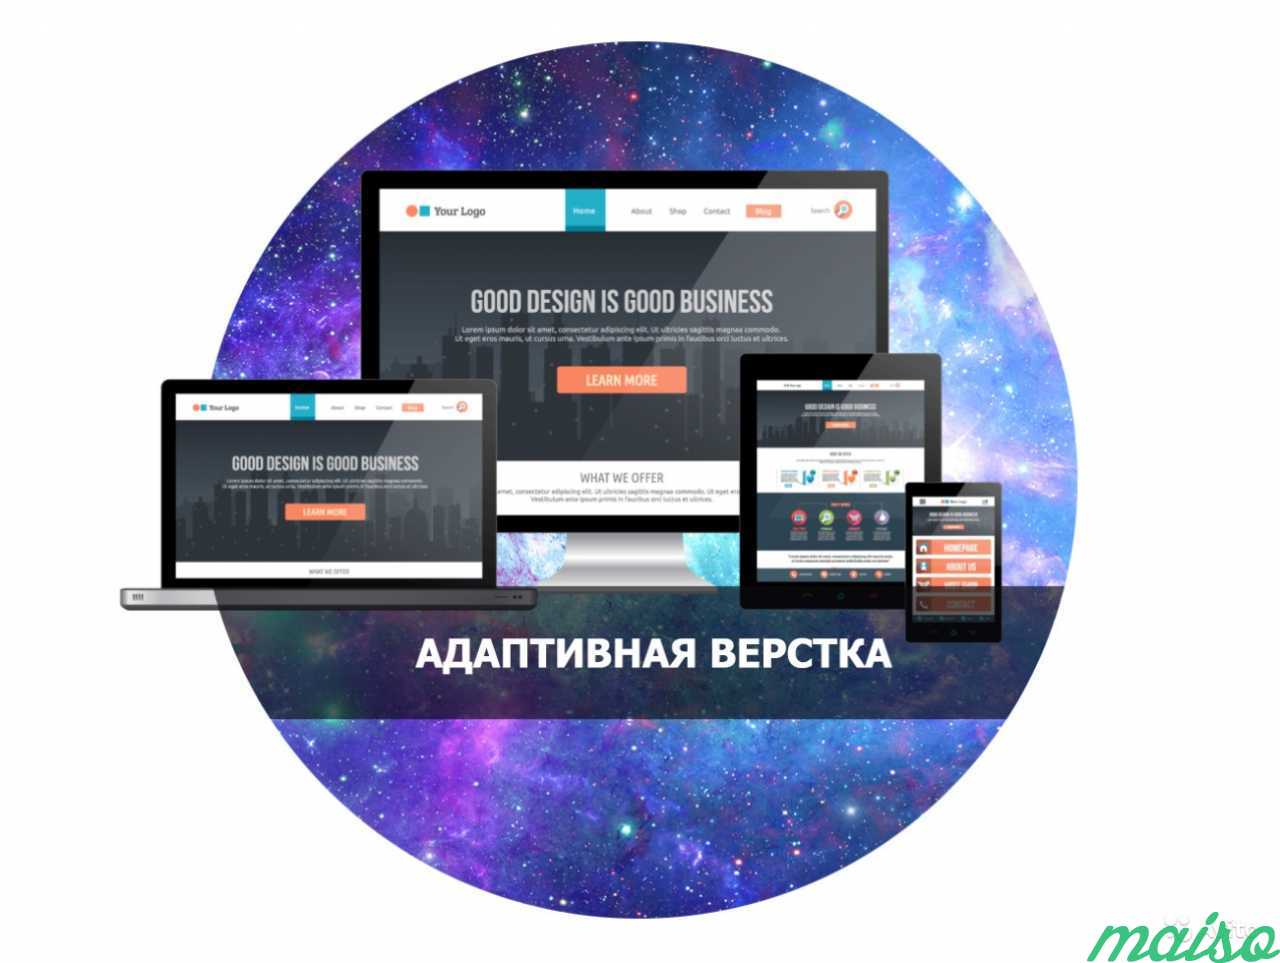 Создание сайтов и landing-page. Частный веб-мастер в Санкт-Петербурге. Фото 3